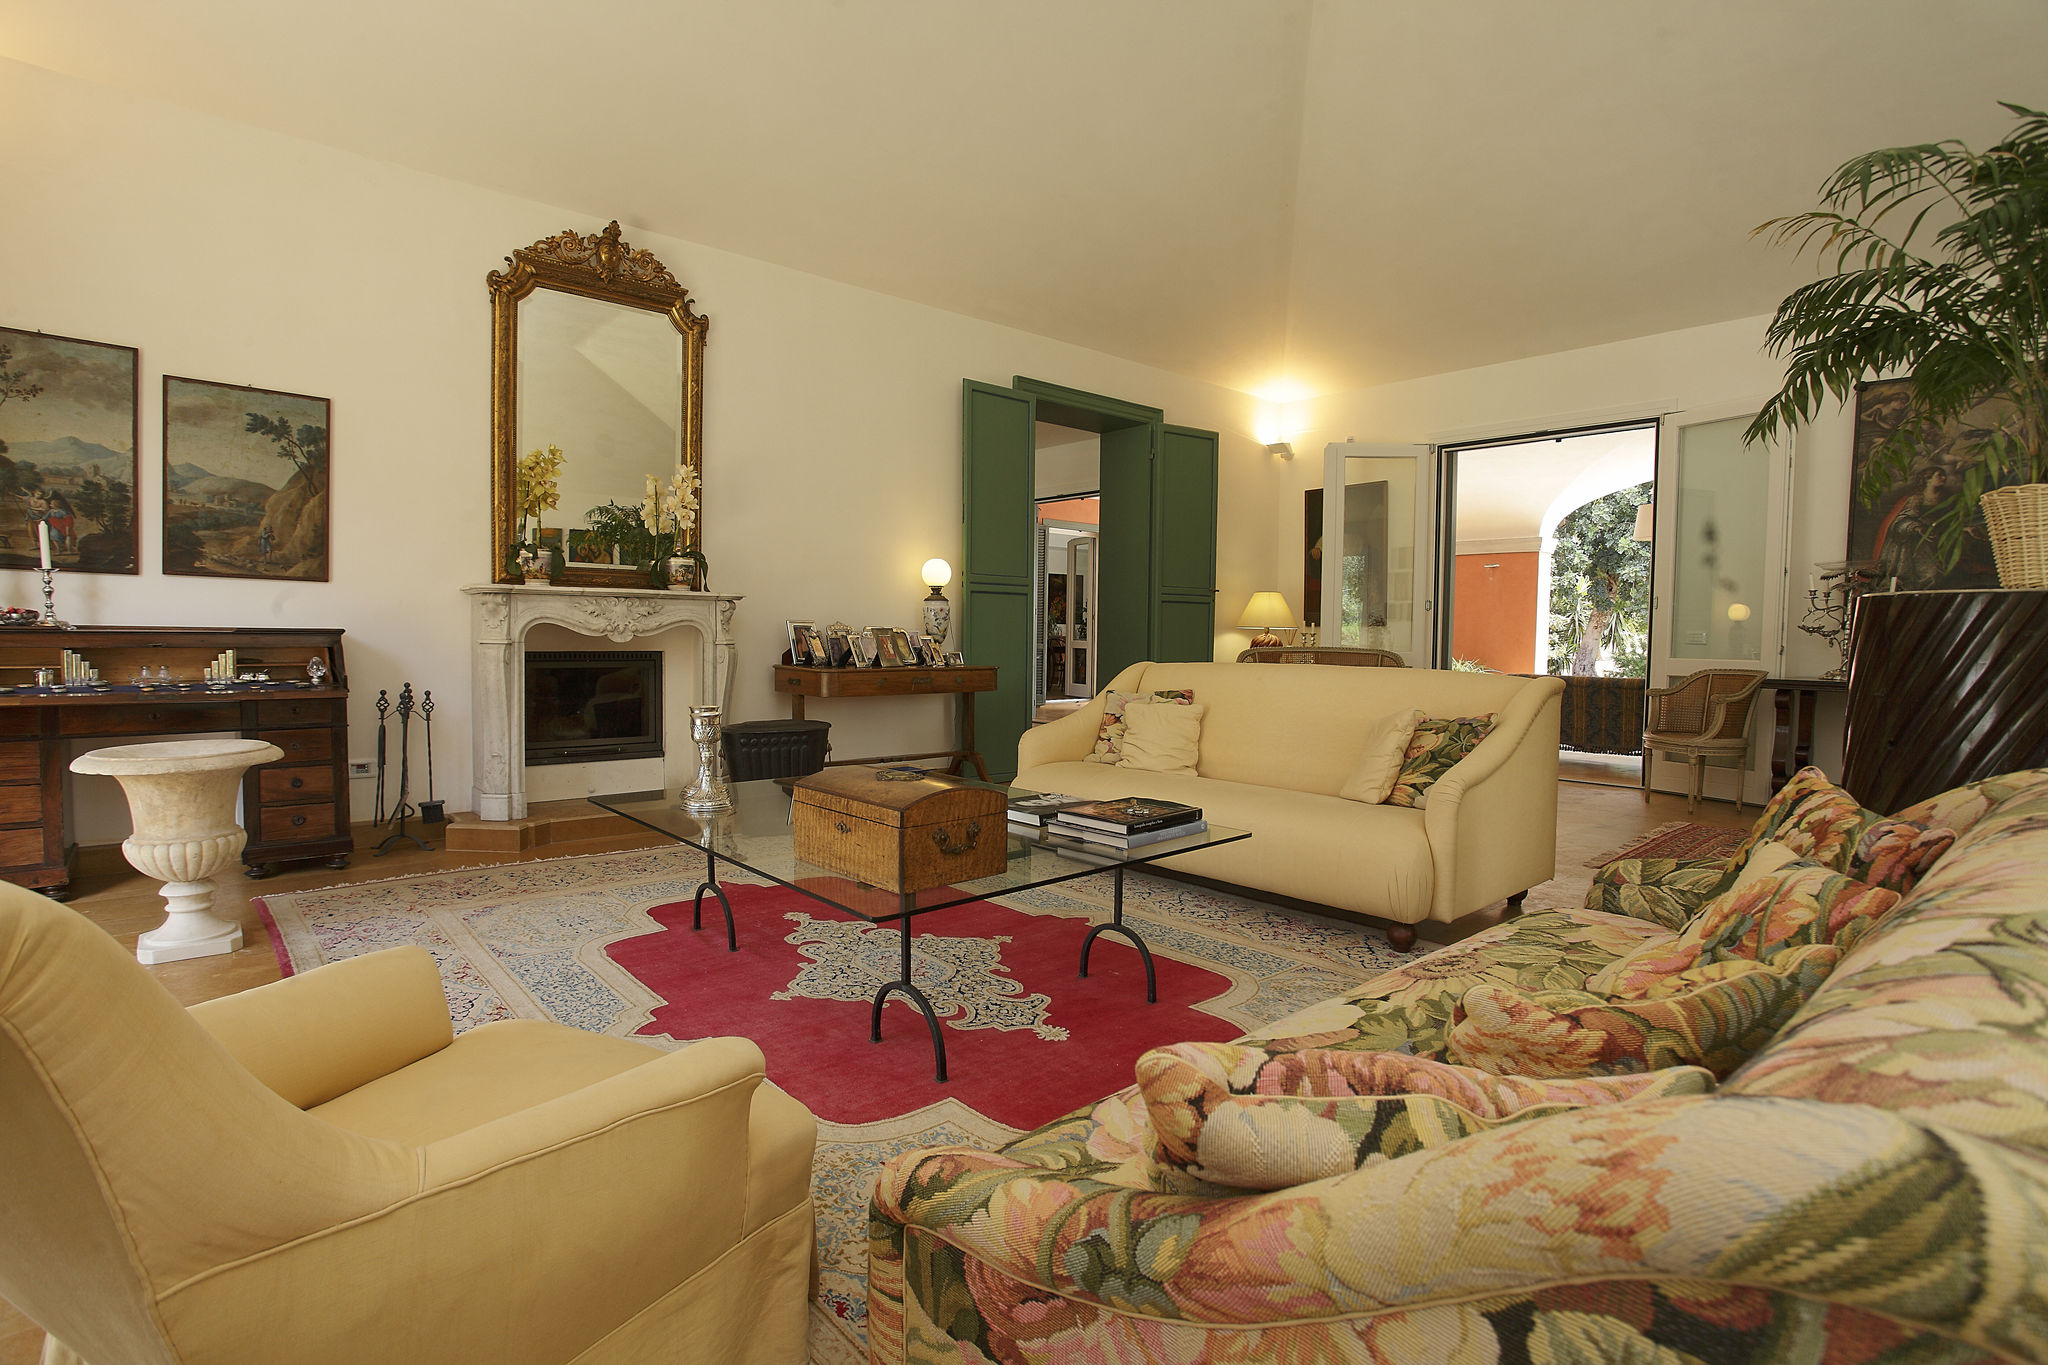 Traditionelle Villa mit Swimmingpool in Marsala Sizilien